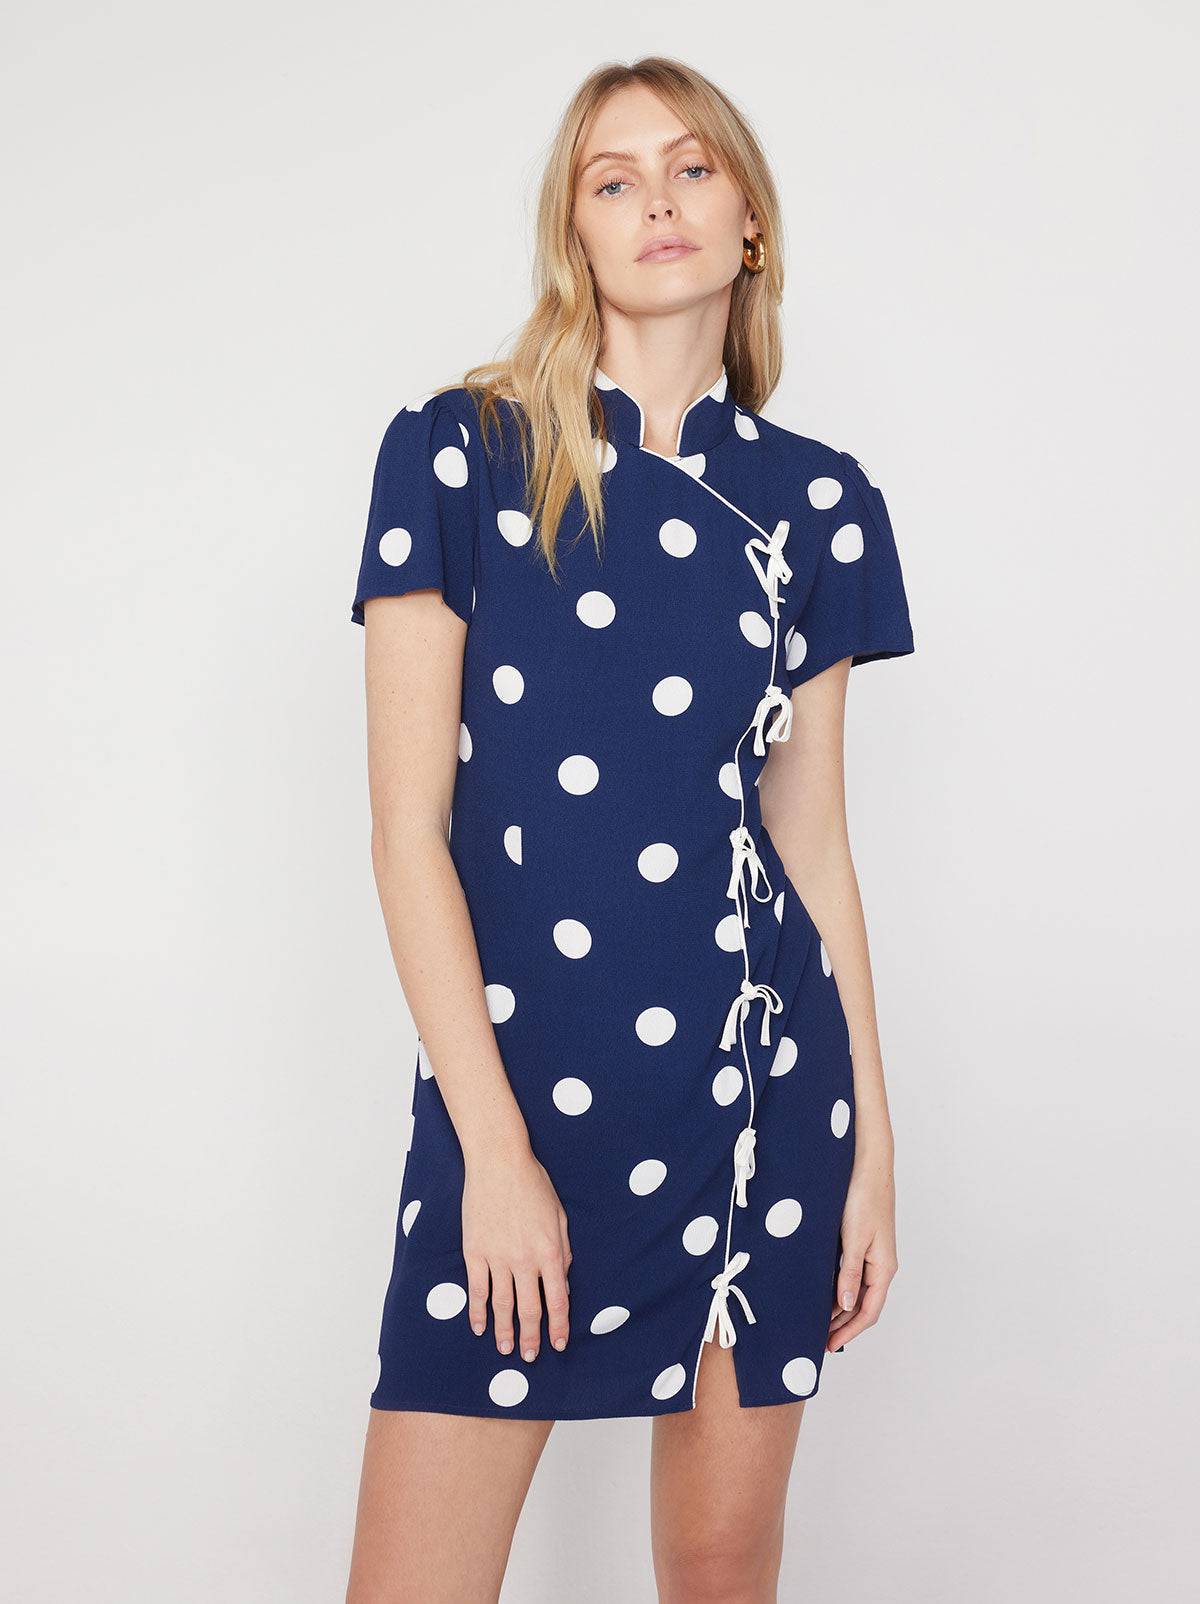 Harlow Navy Polka Dot Mini Dress | KITRI Studio